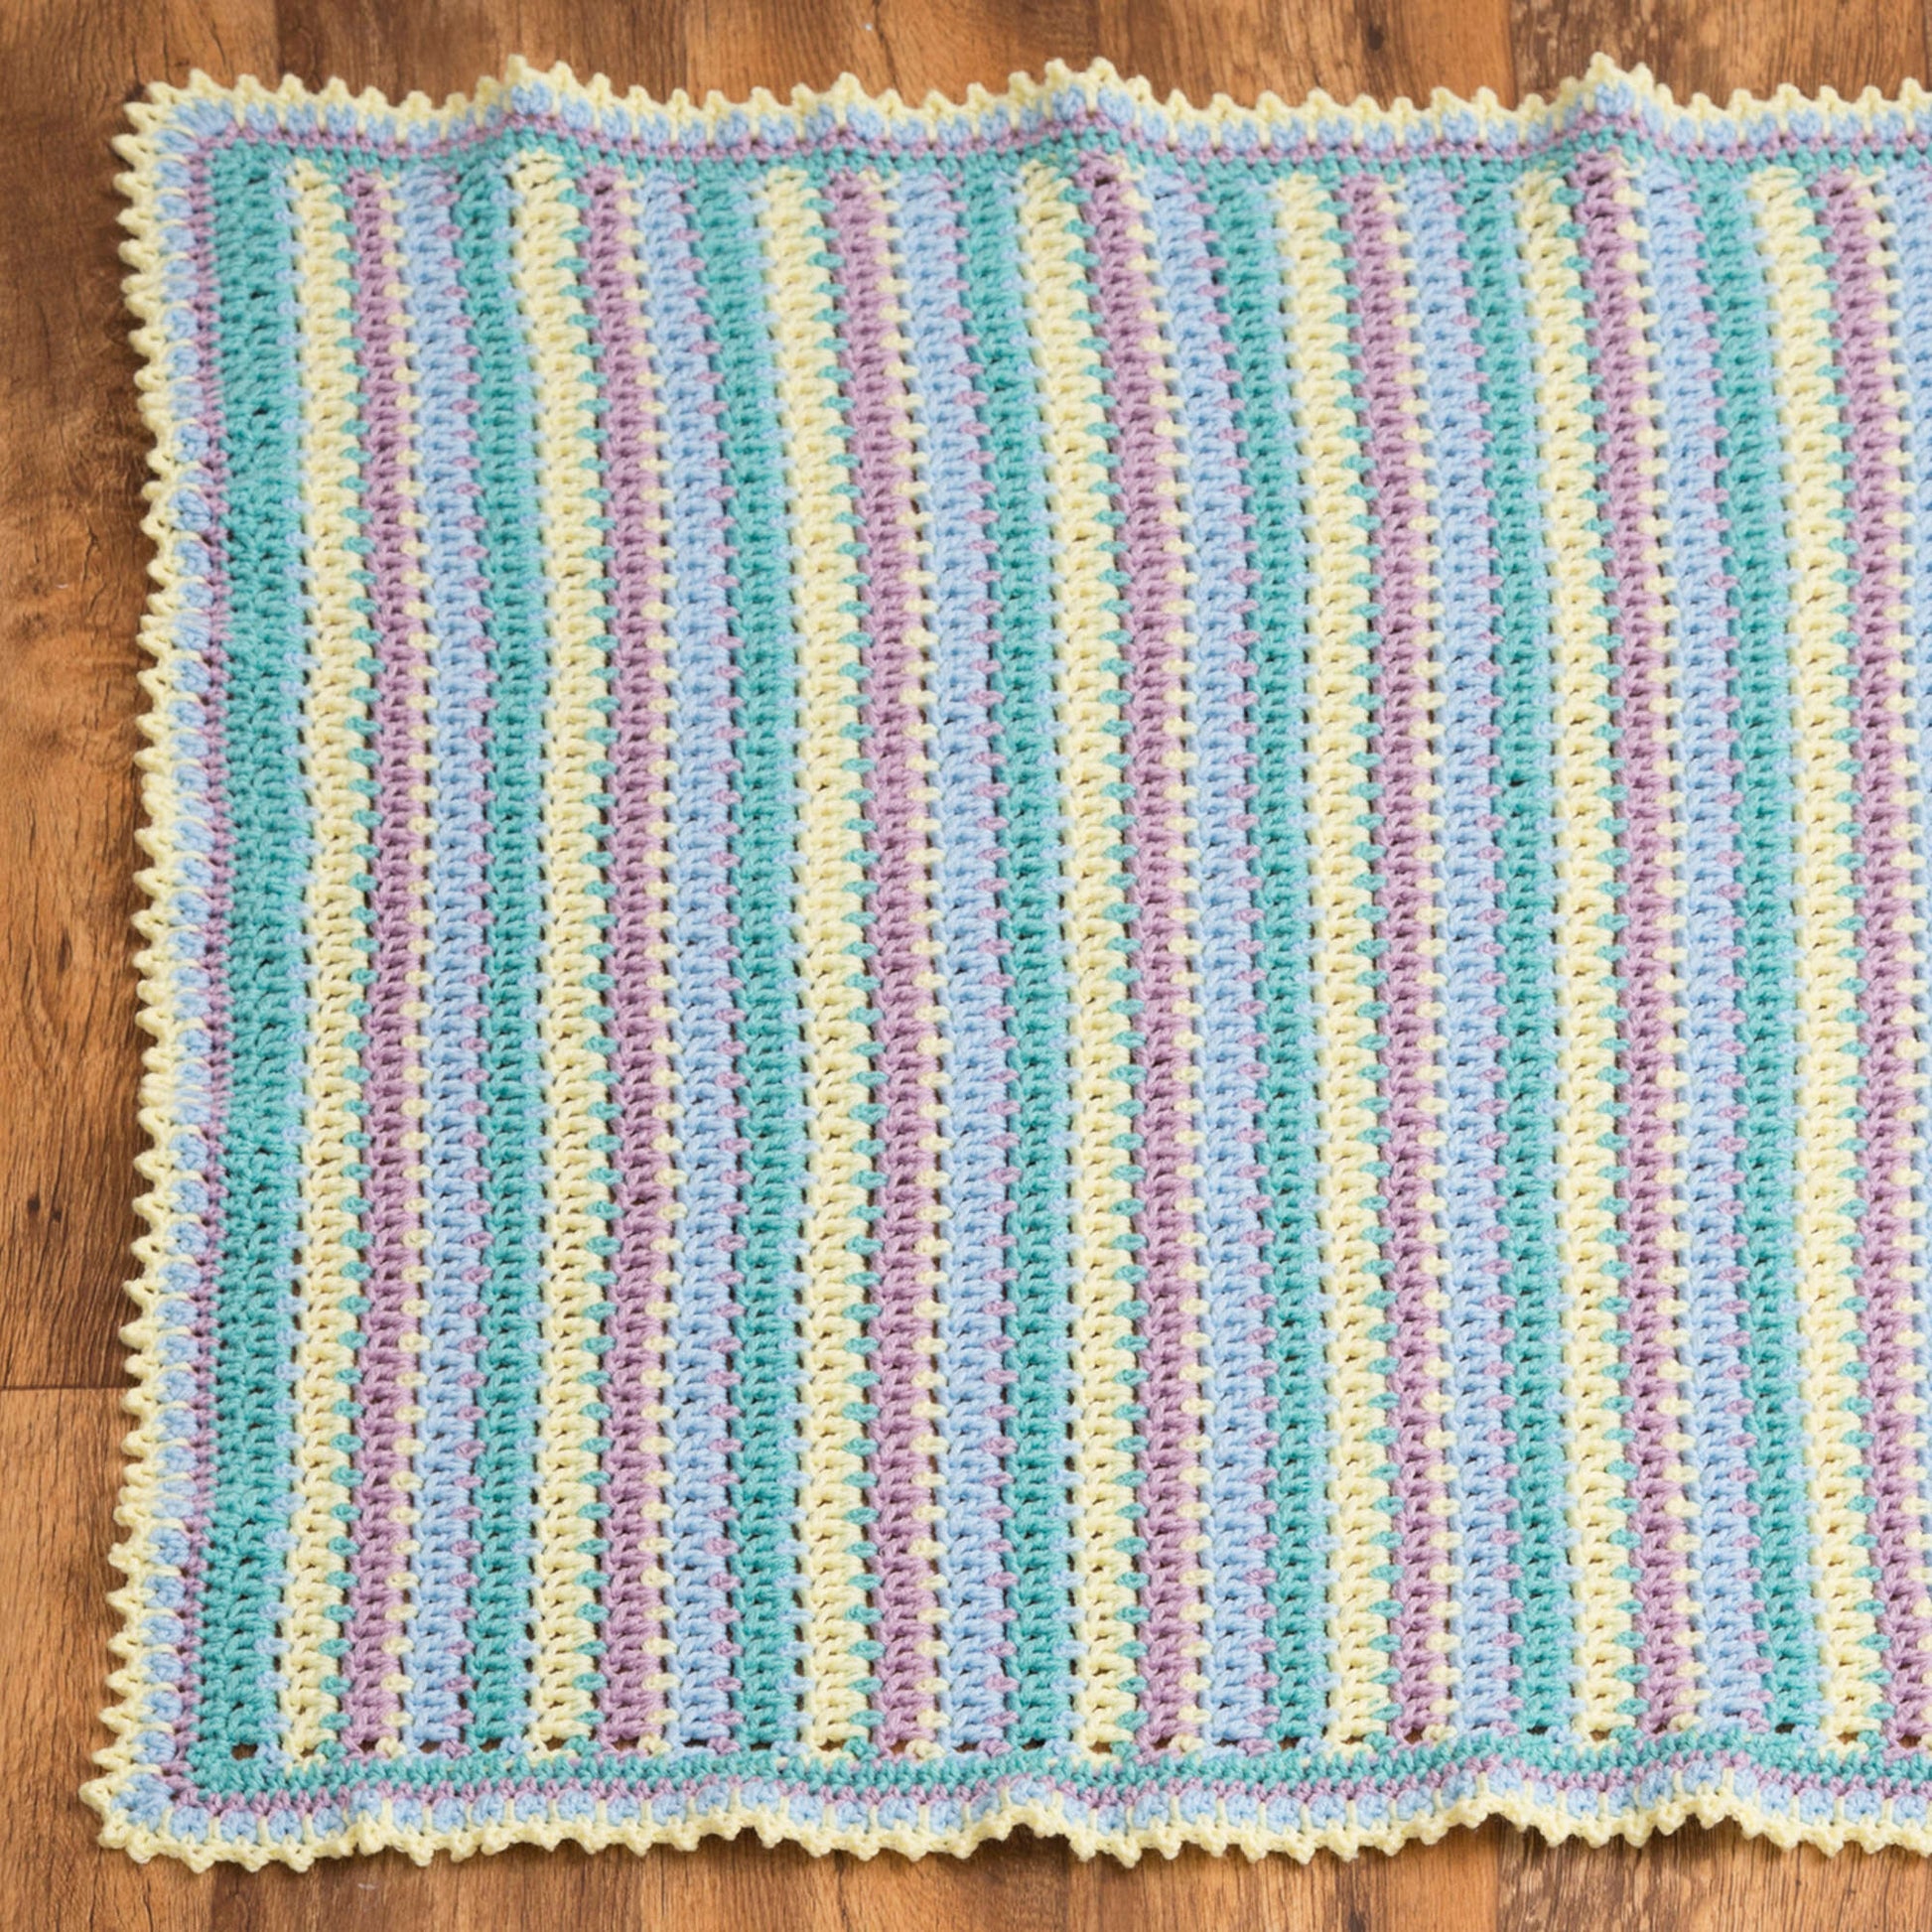 Free Red Heart Baby Stripes Blanket Crochet Pattern